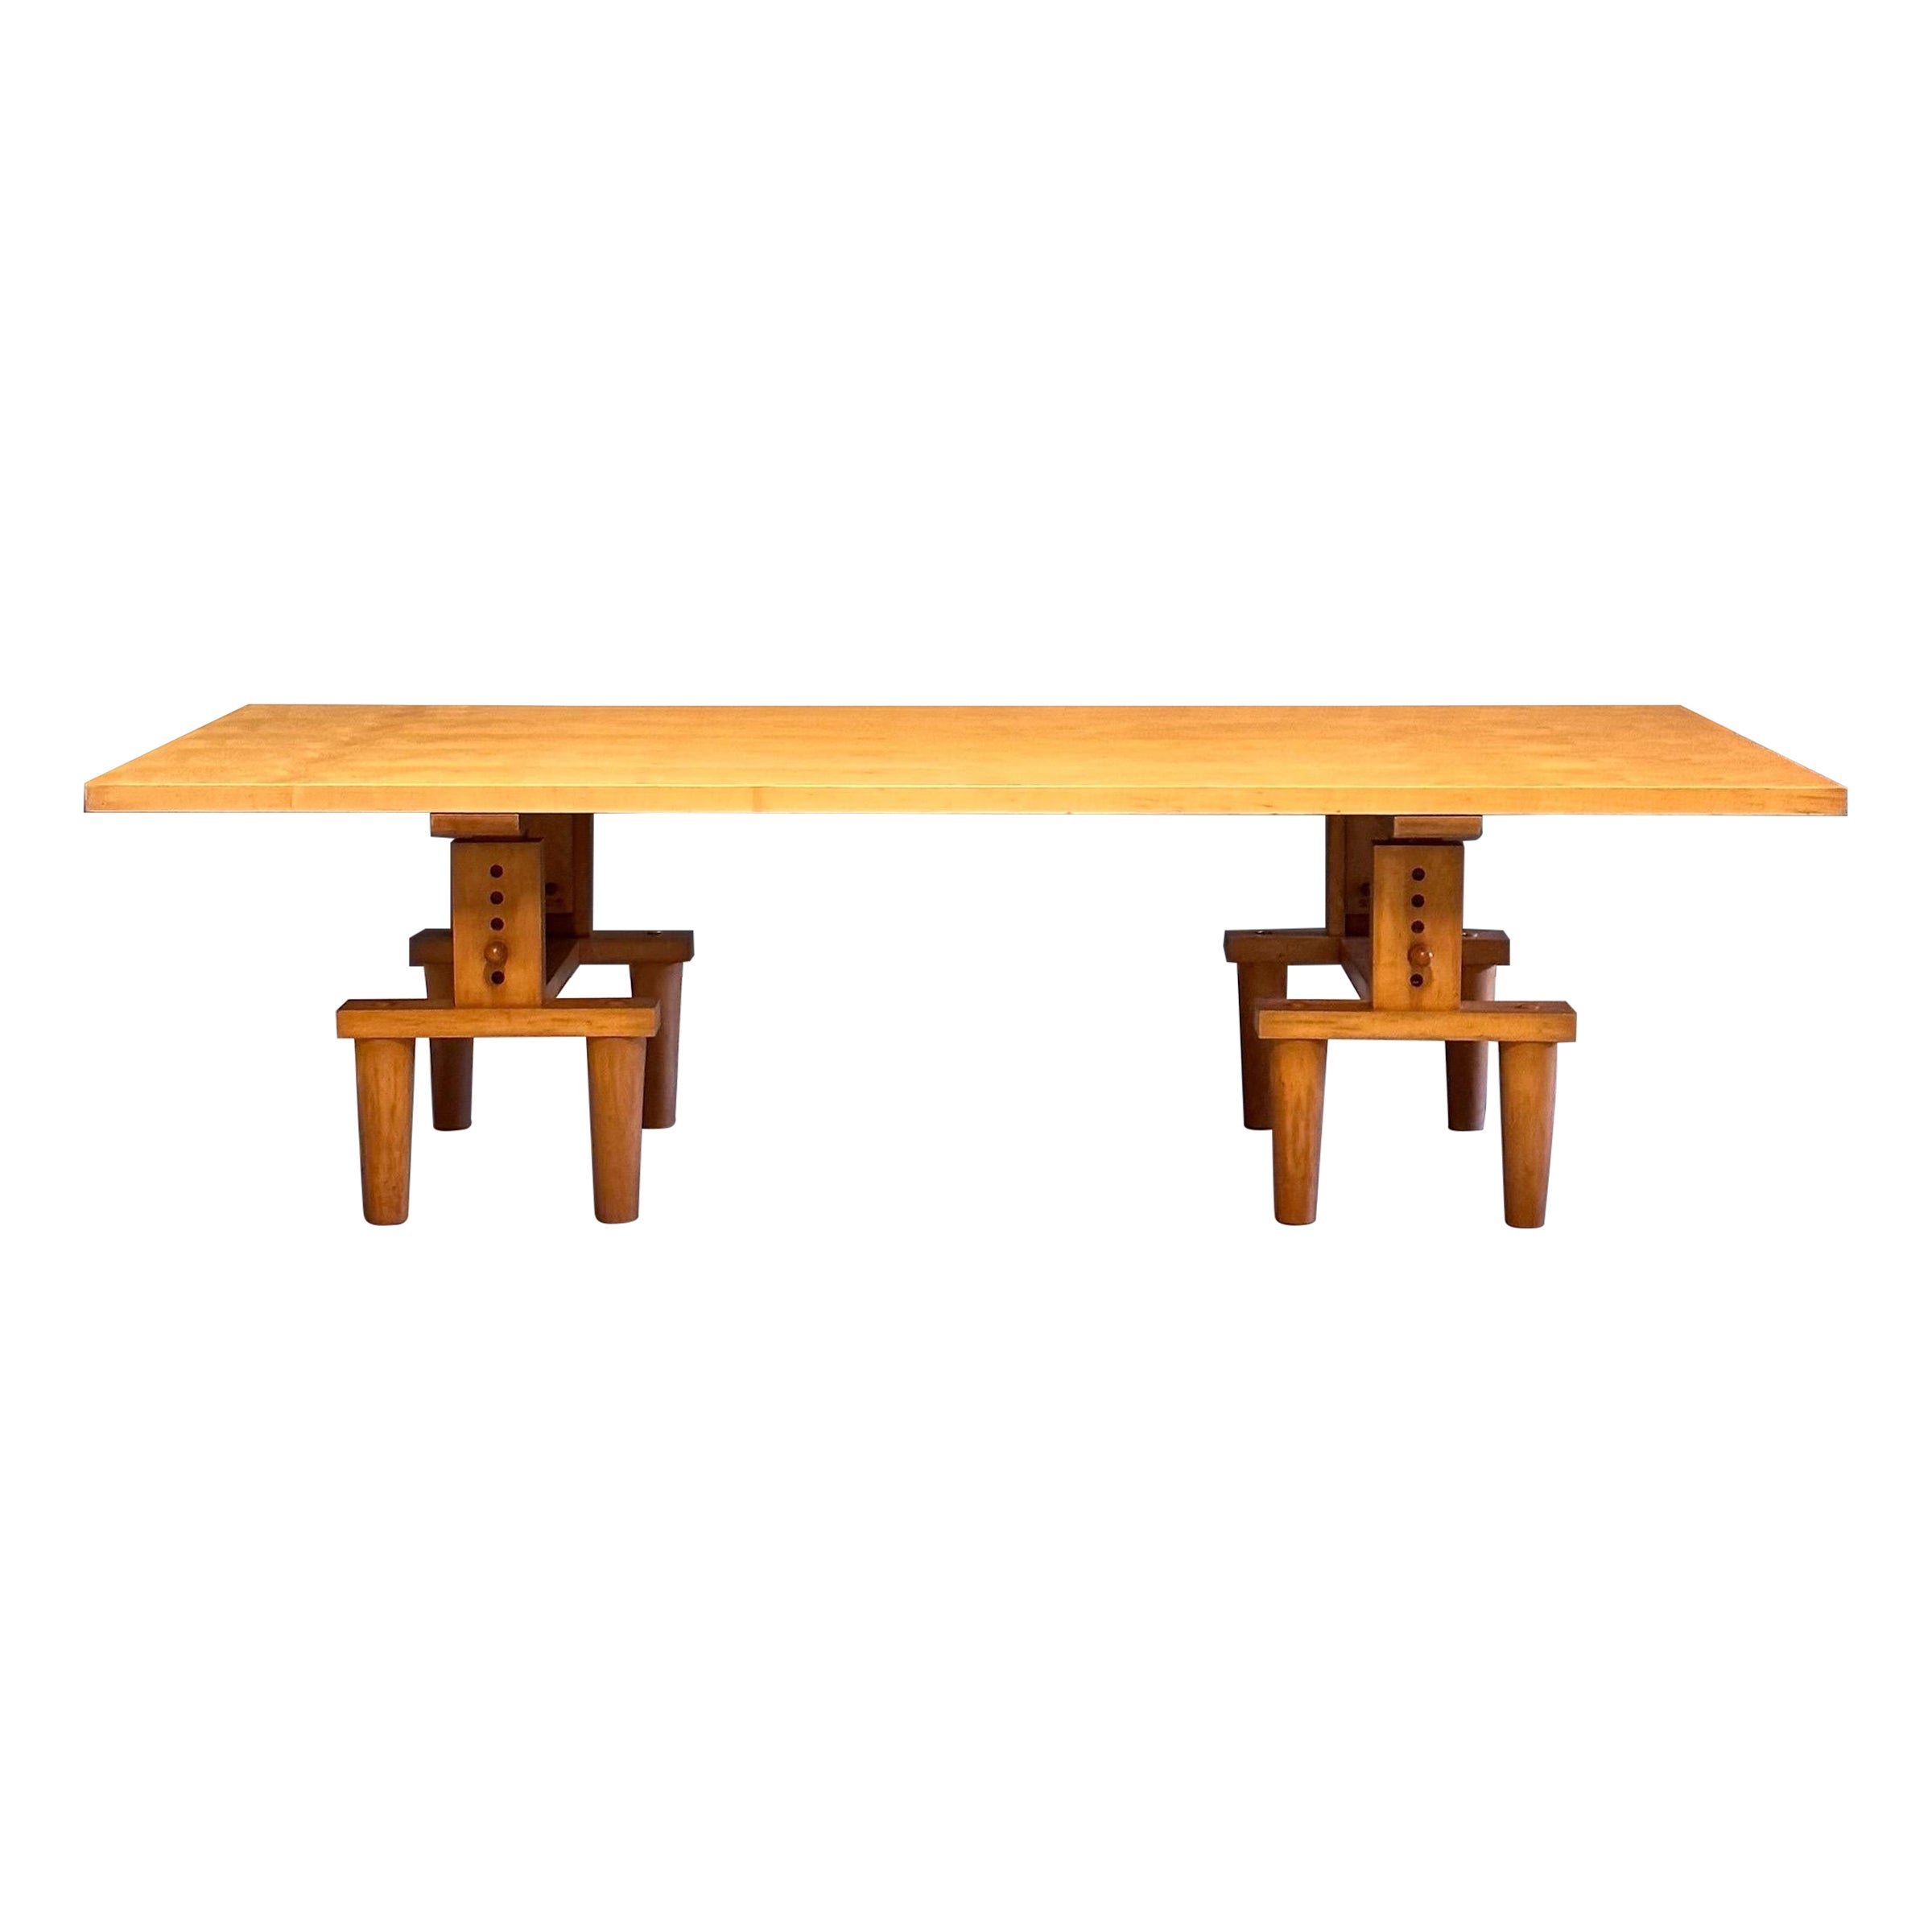 Rare "Bramante" Table by Achille and Pier Giacomo Castiglioni for Zanotta, 1950s